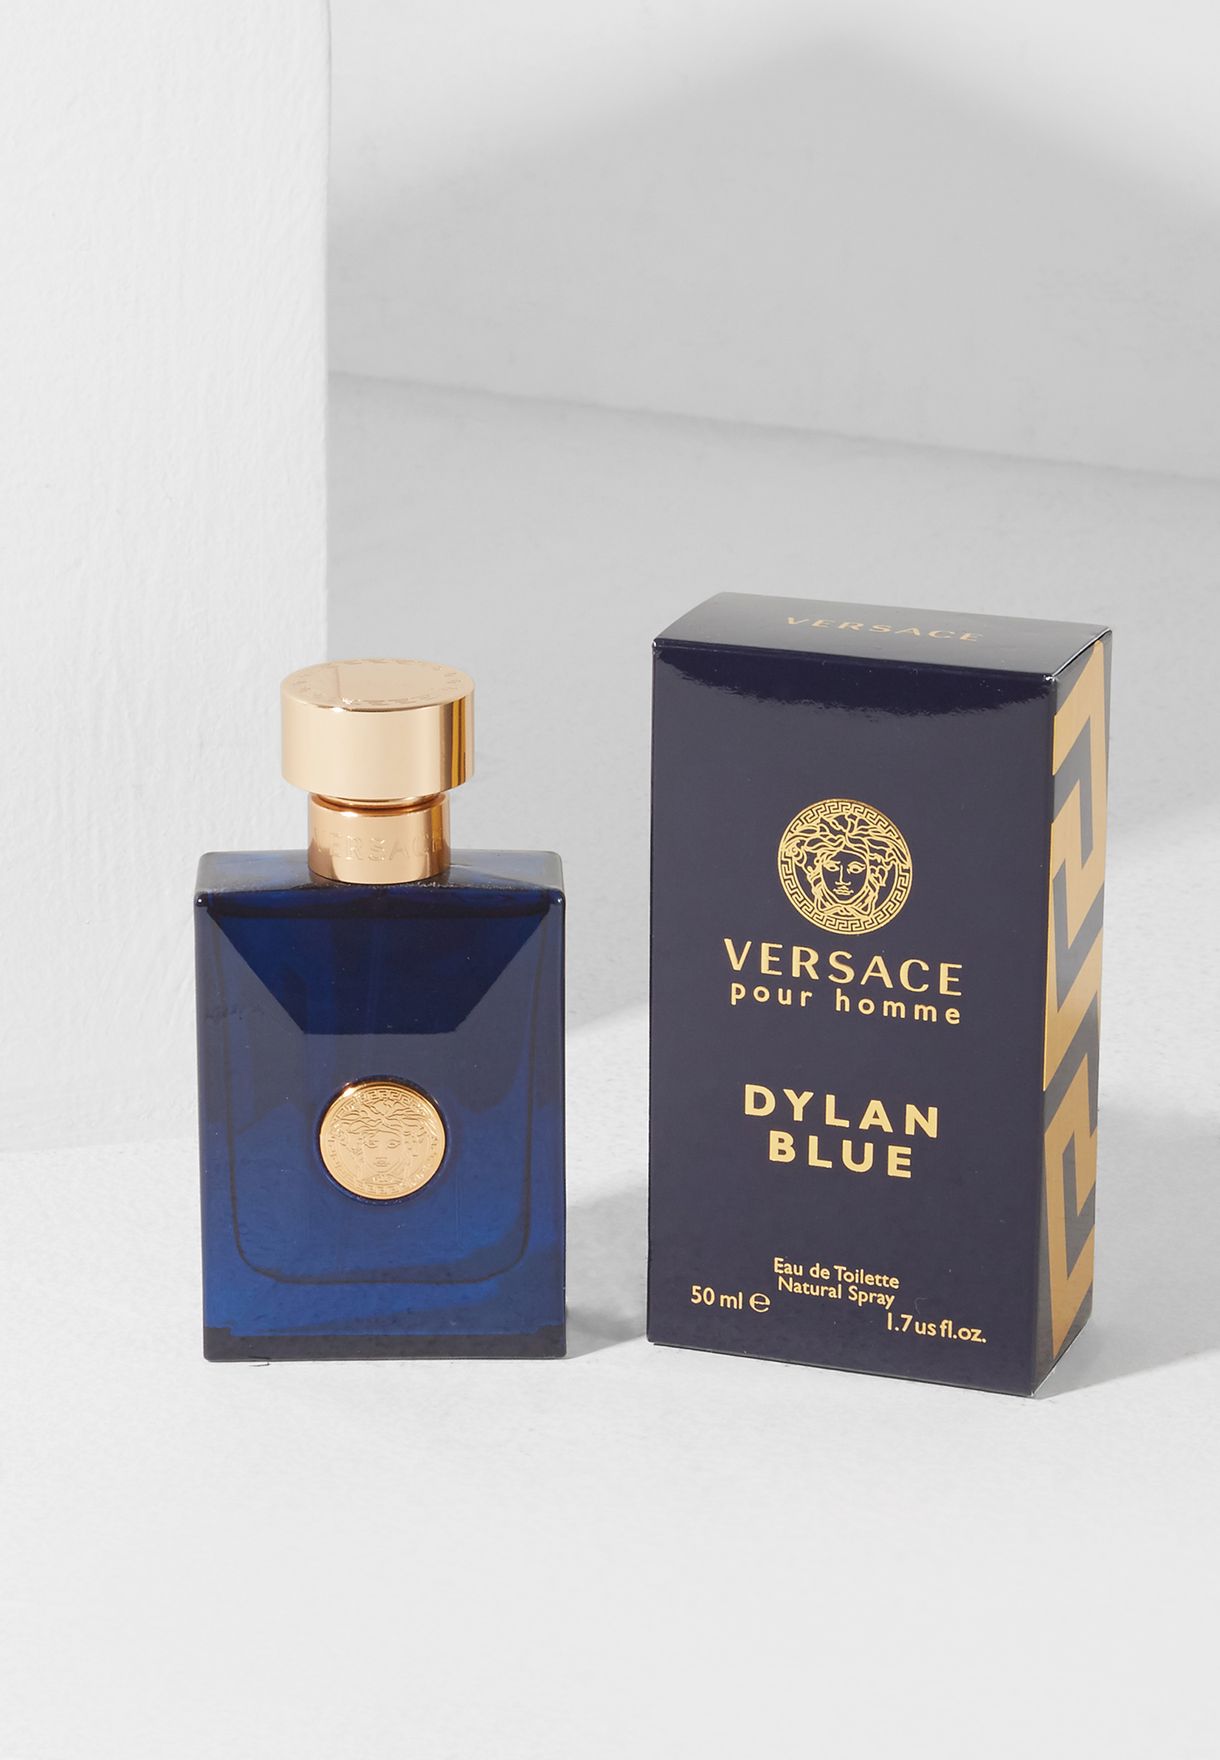 dylan blue 50ml price